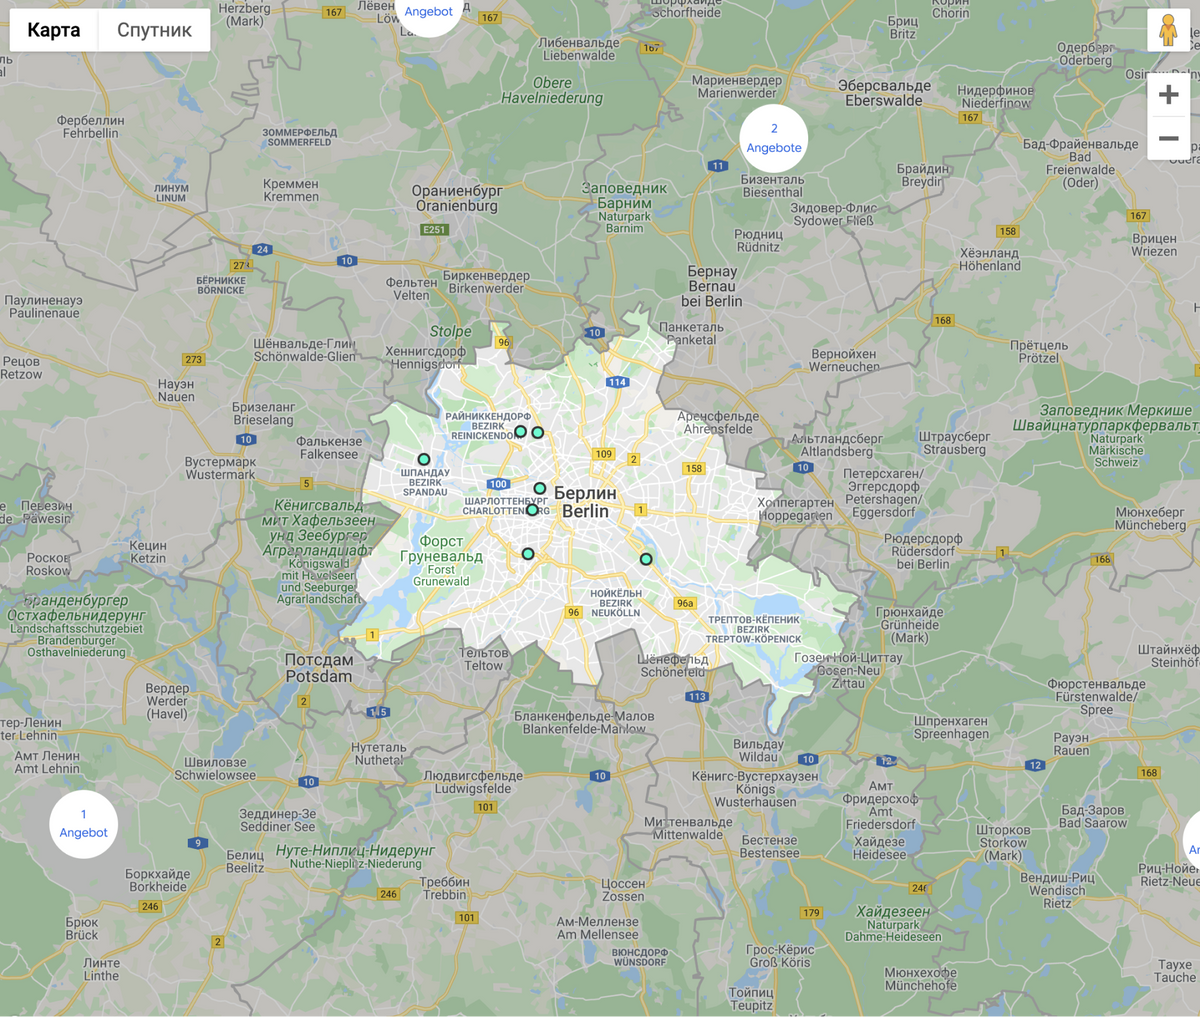 Так выглядит карта с предложениями квартир на сайте недвижимости Германии. Источник:&nbsp;immobilienscout24.de